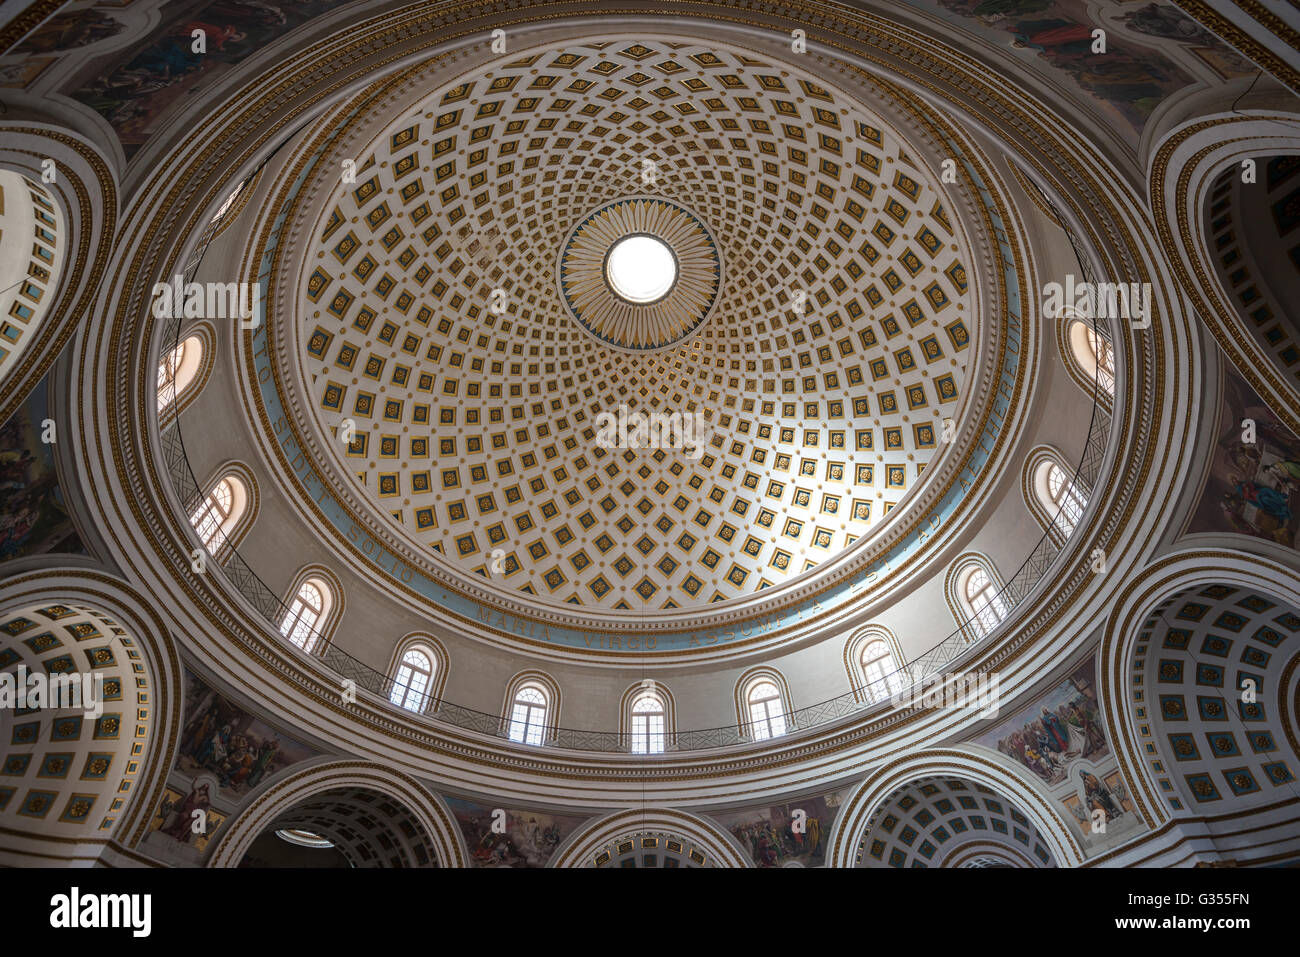 The Mosta dome church in Malta Stock Photo